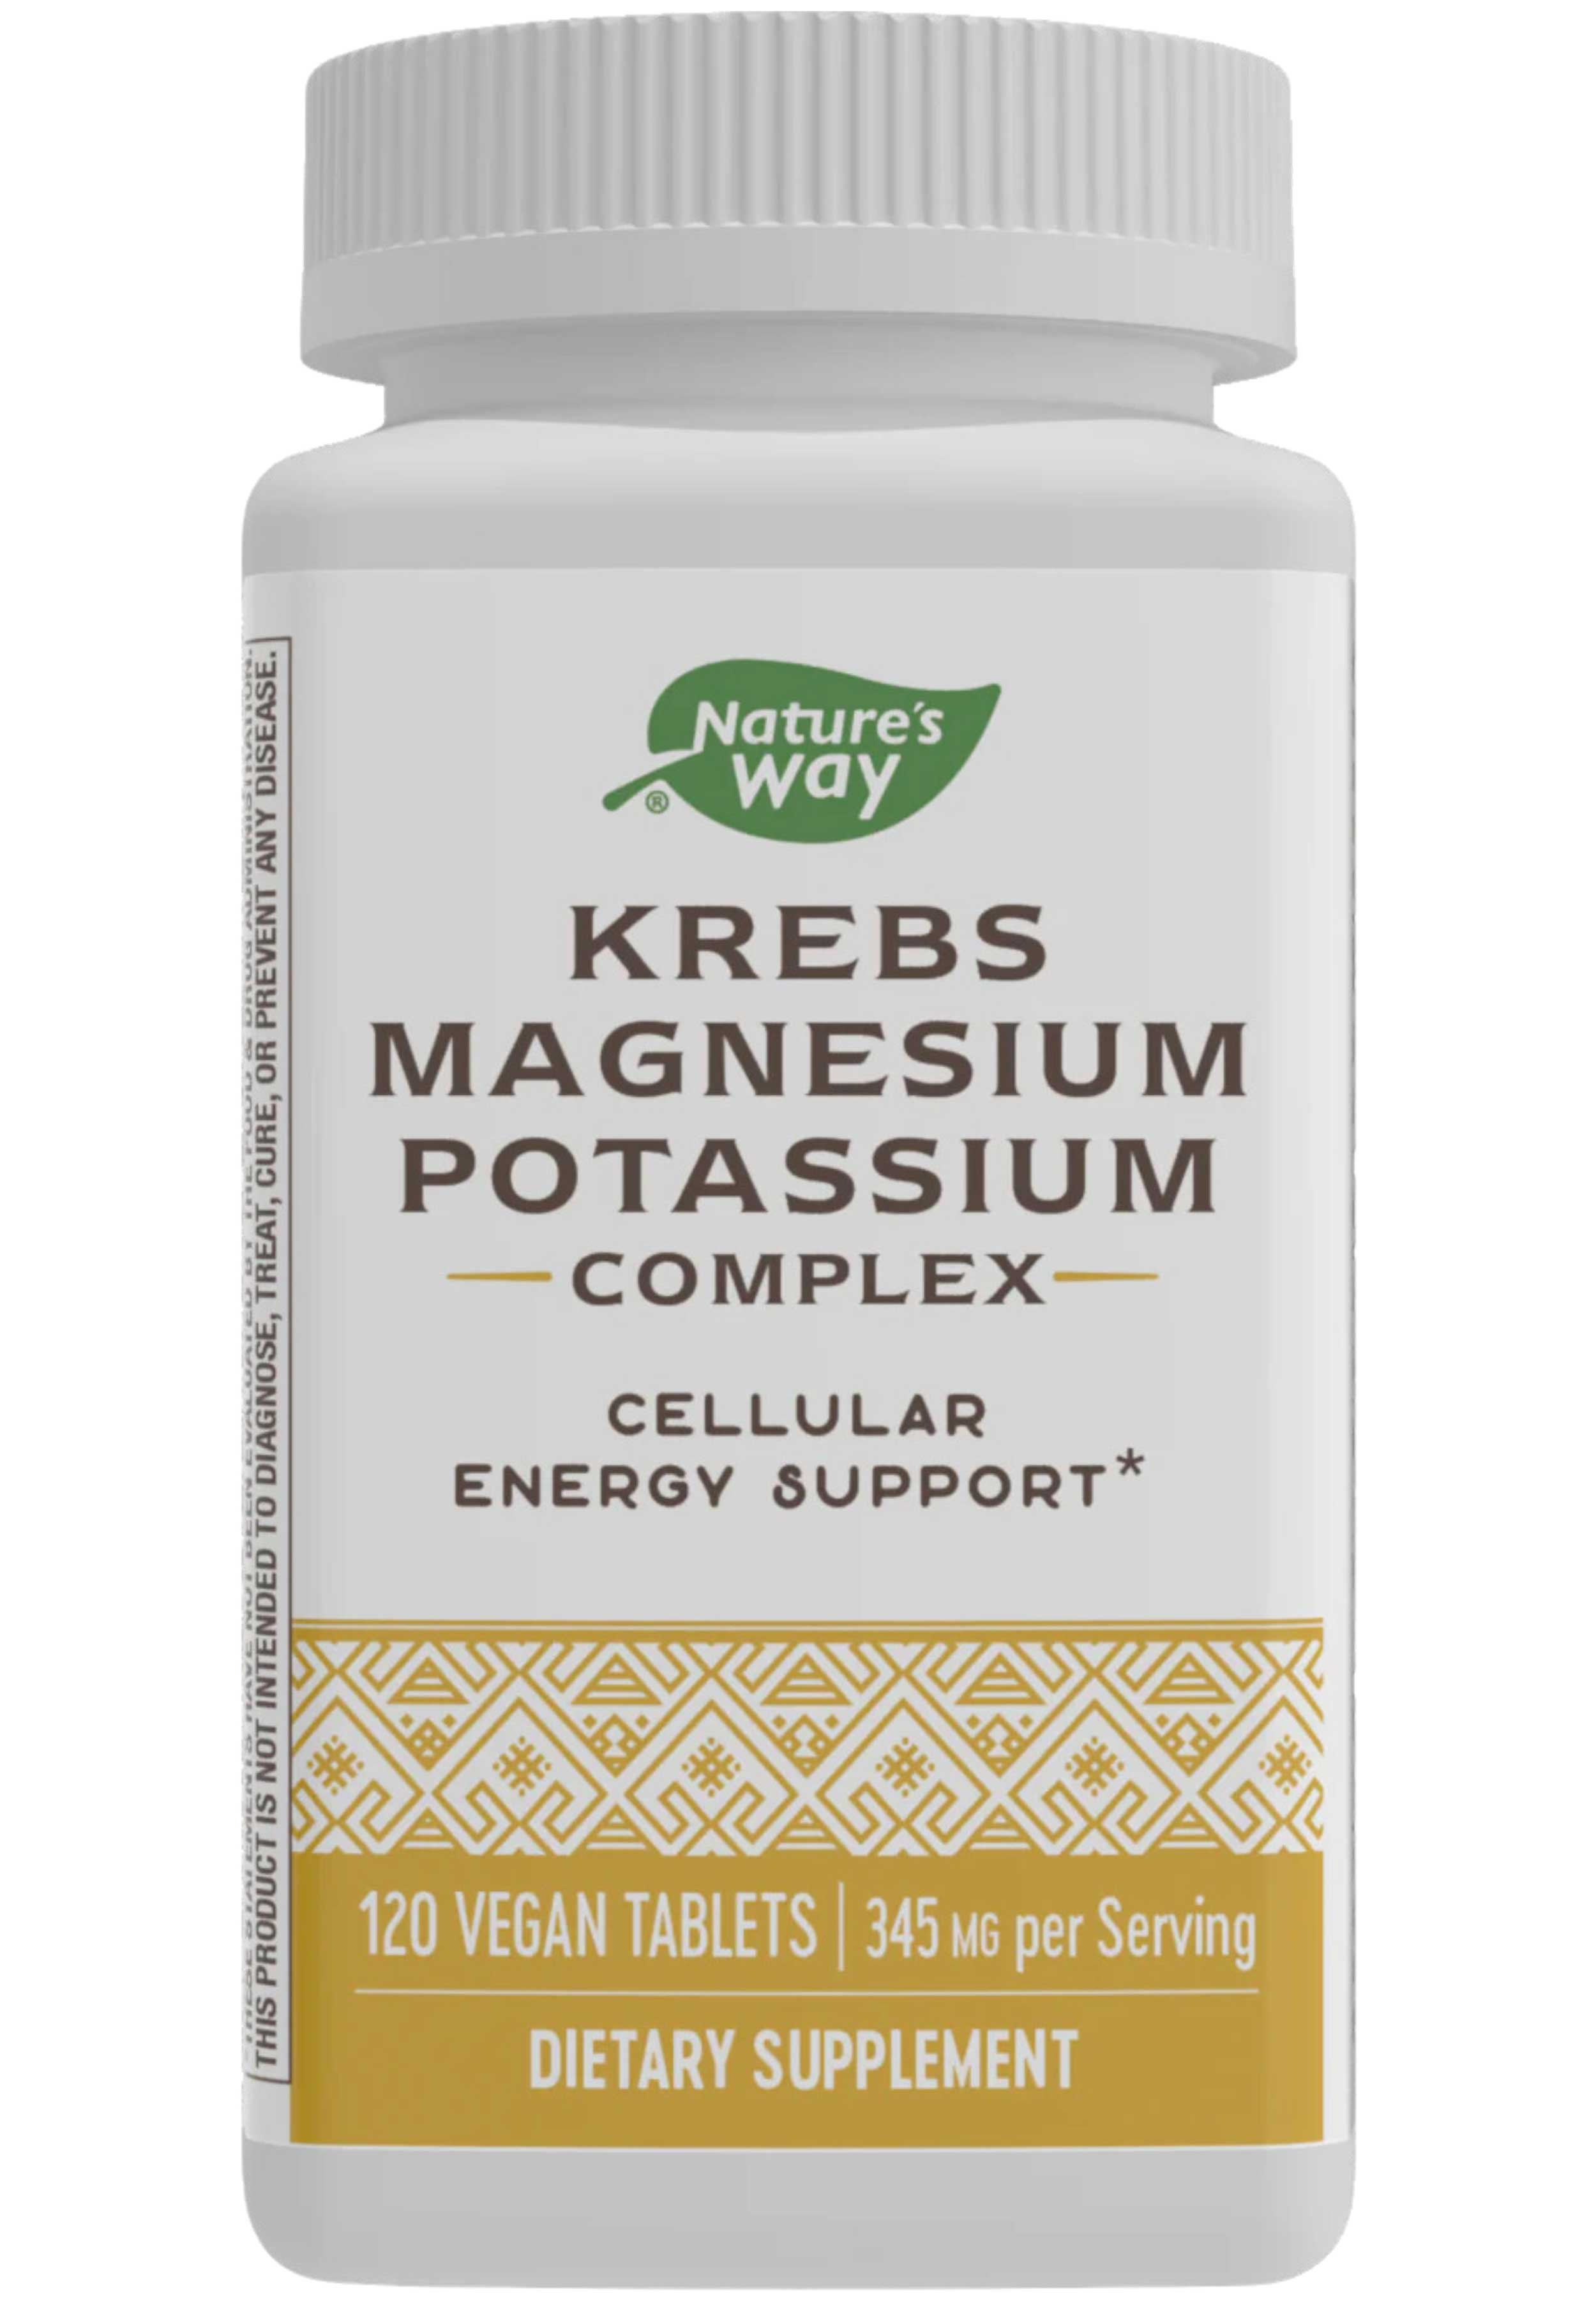 Nature's Way Krebs Magnesium Potassium